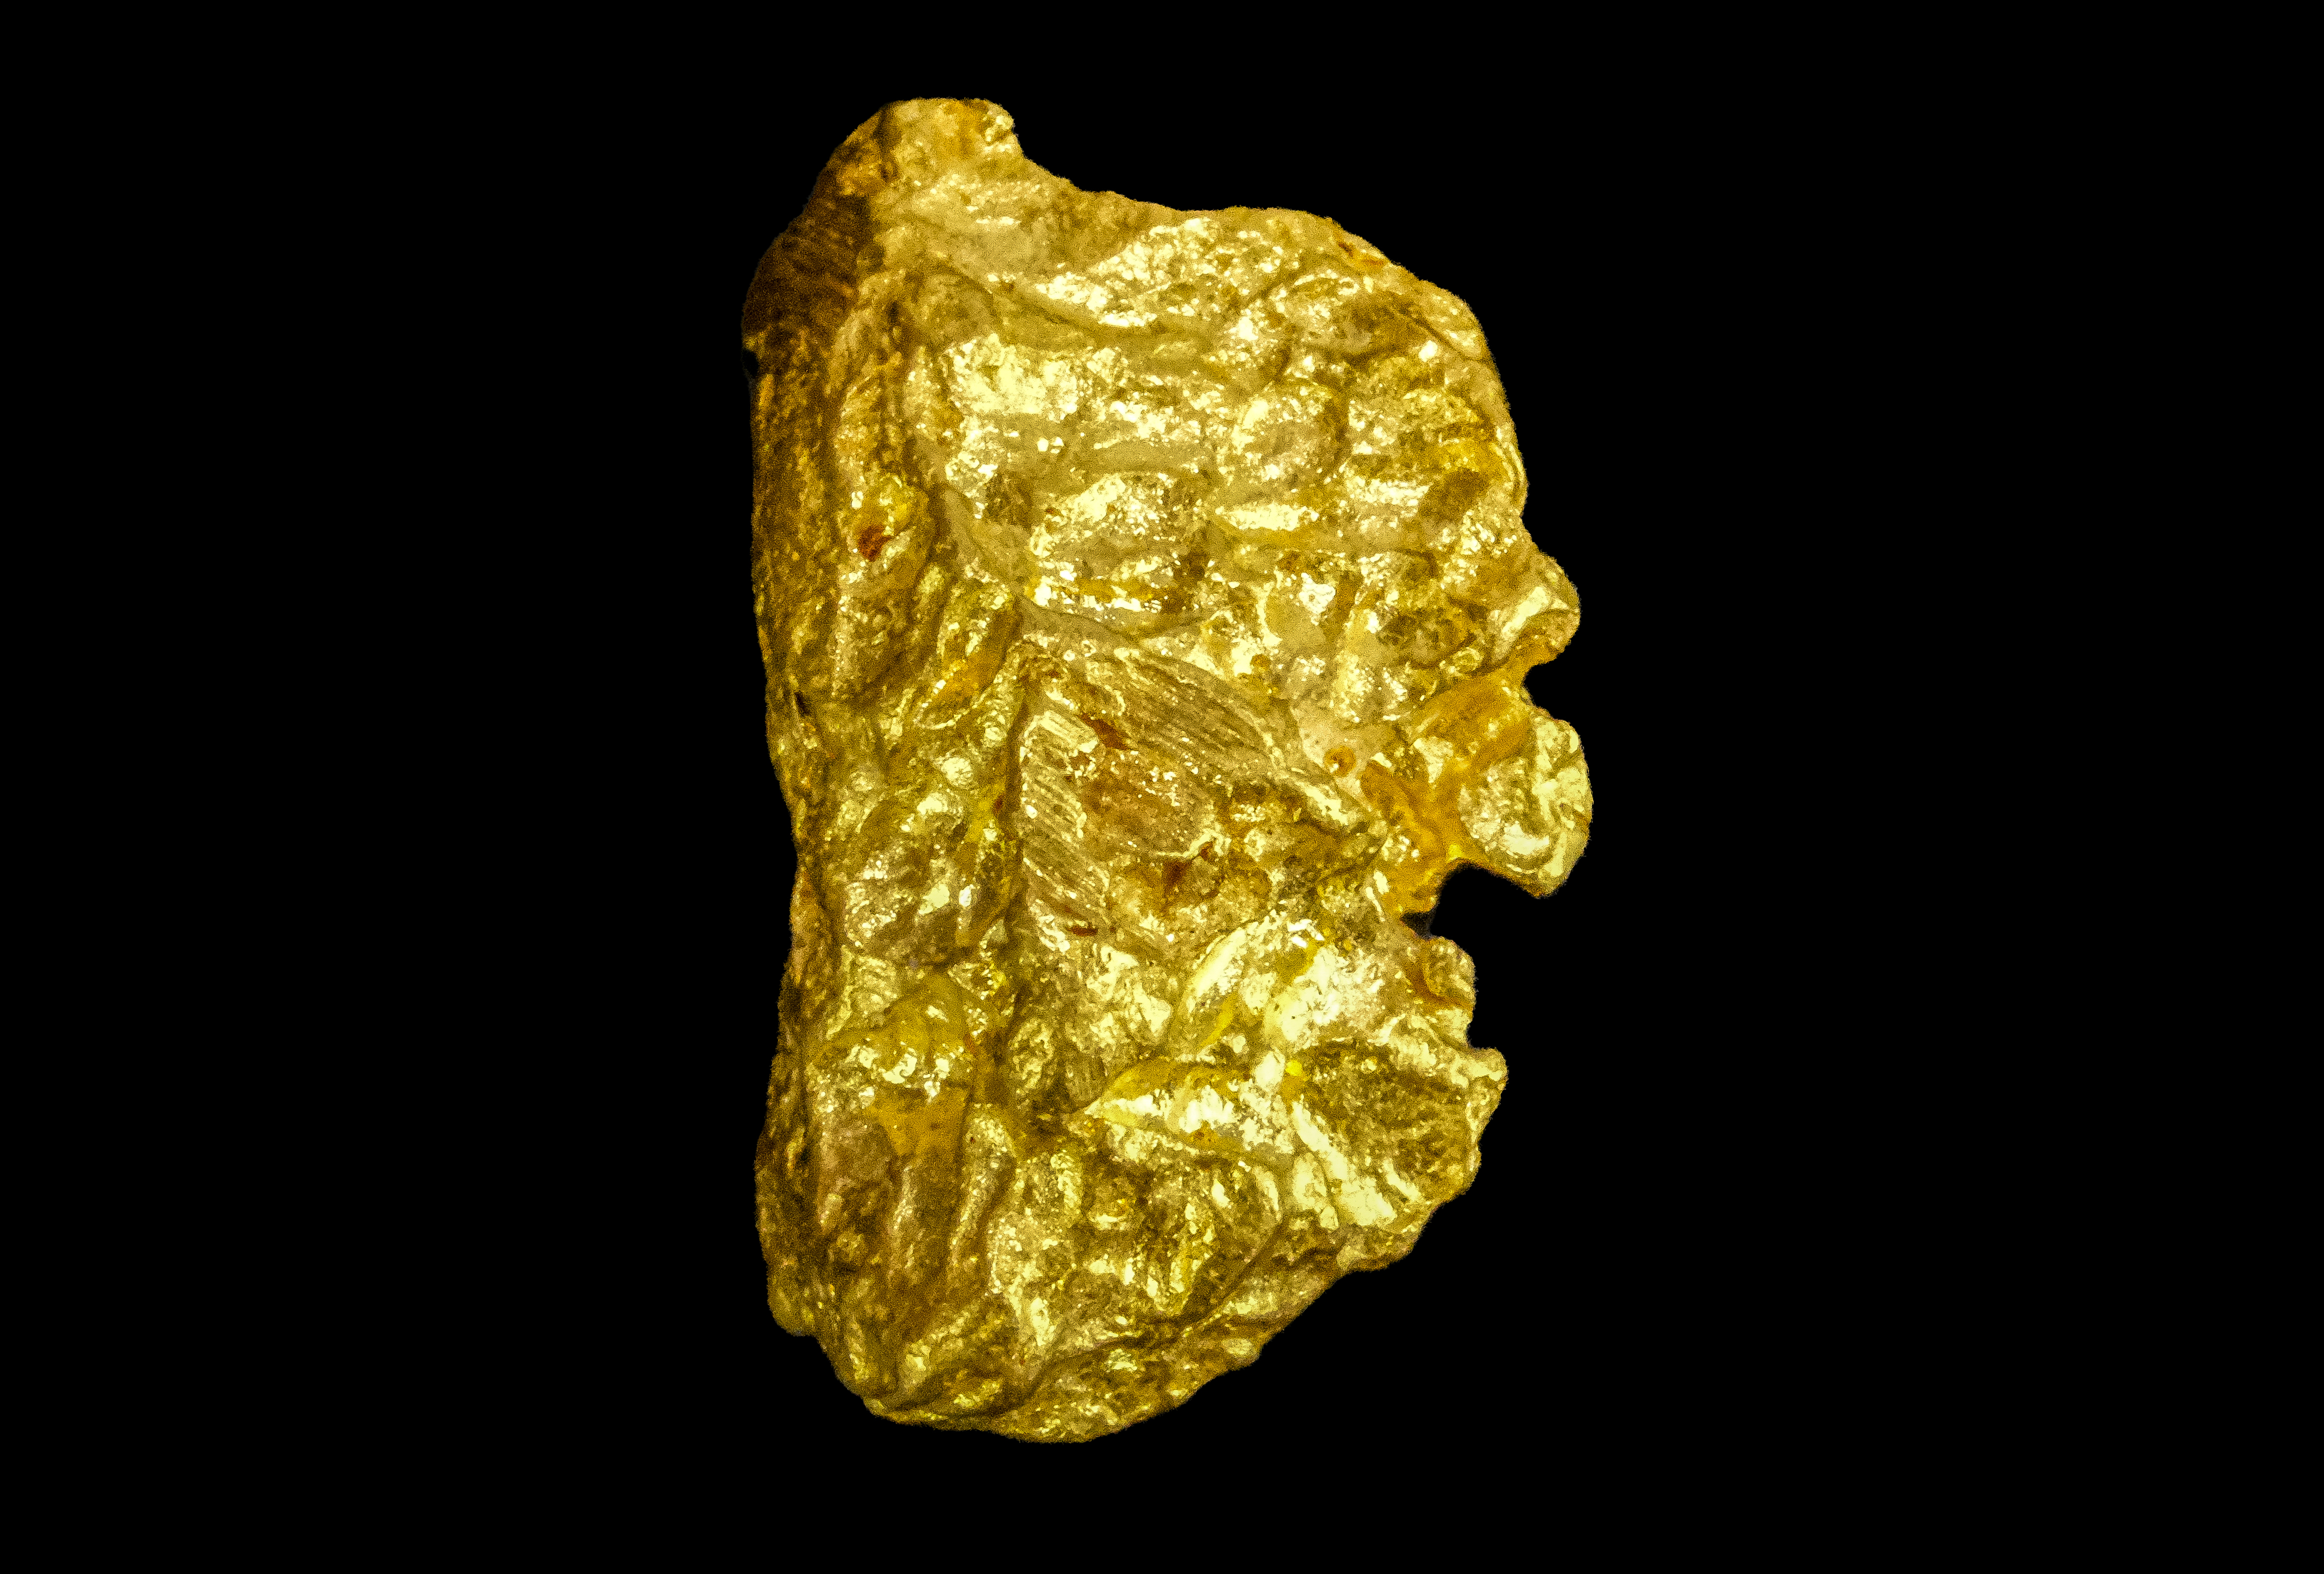 Pépite d'or 6.96 g